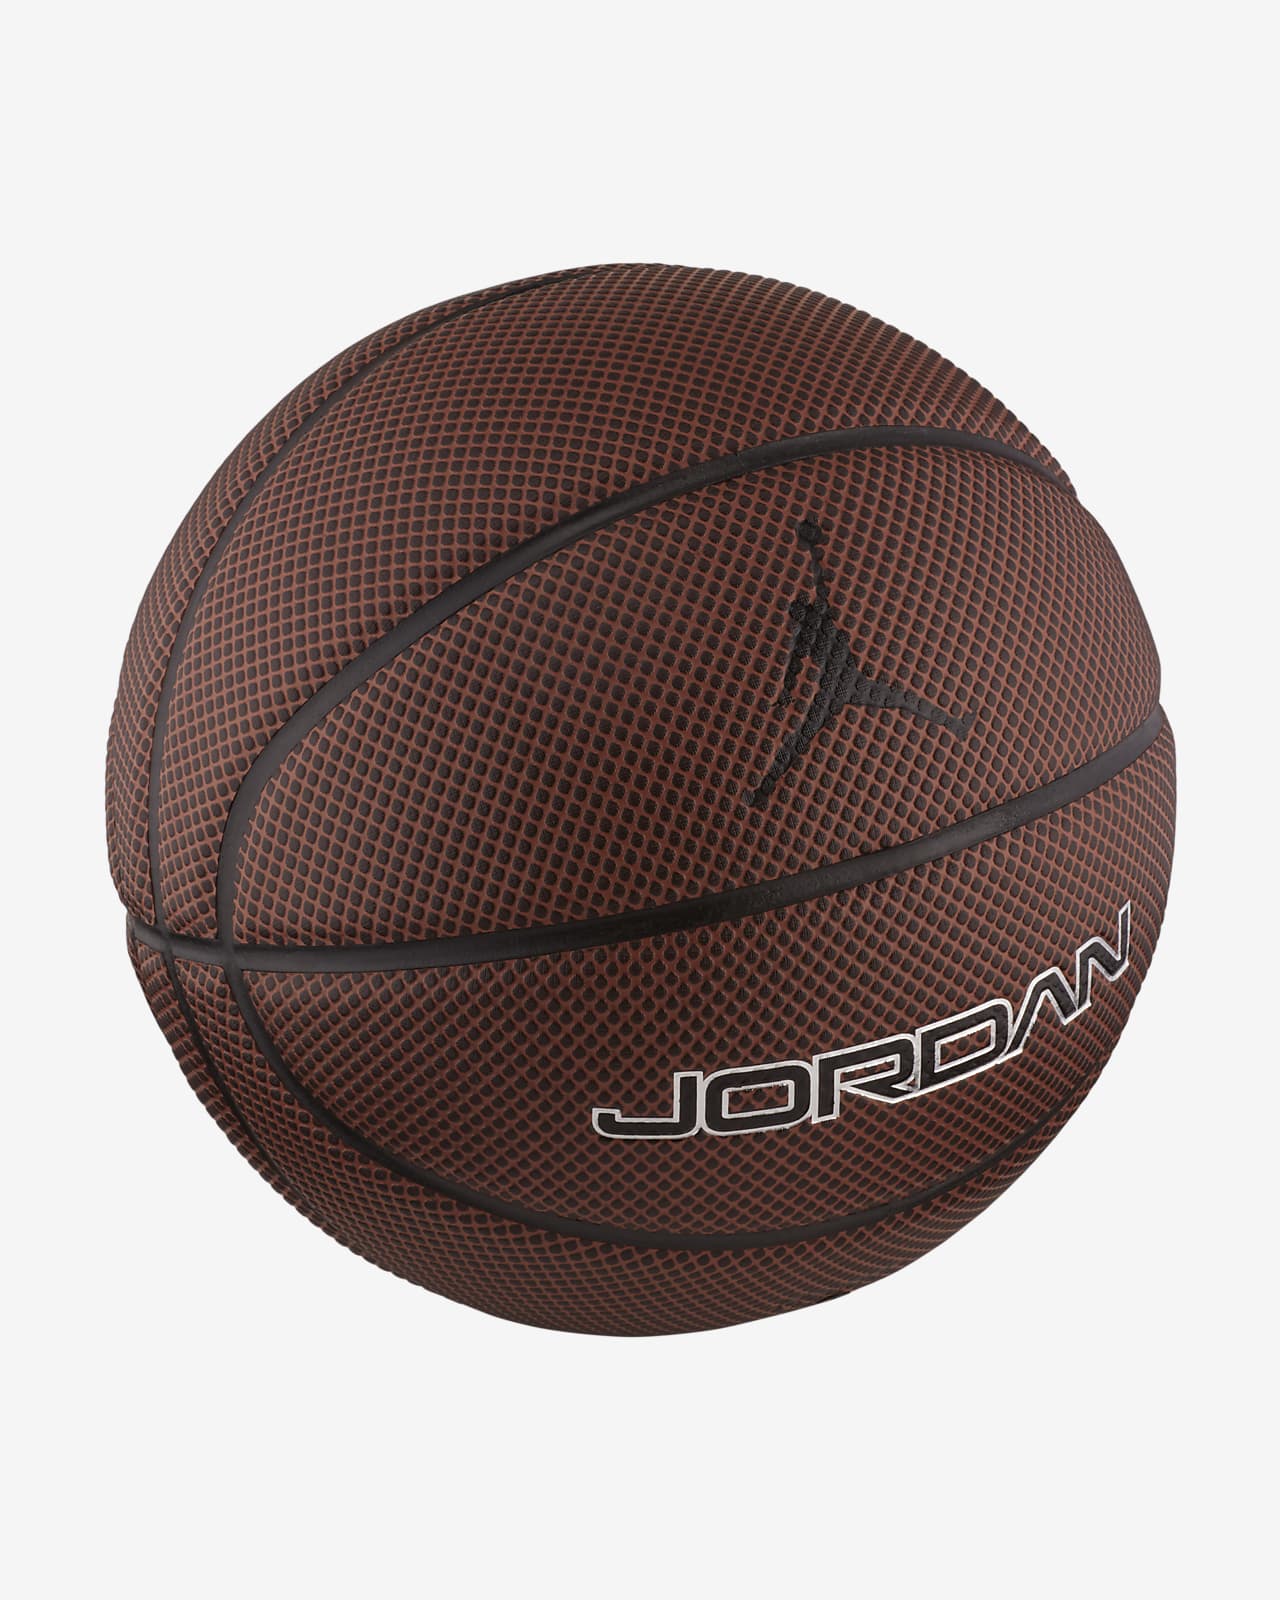 Ballon de basketball Jordan Legacy 8P (taille 7)